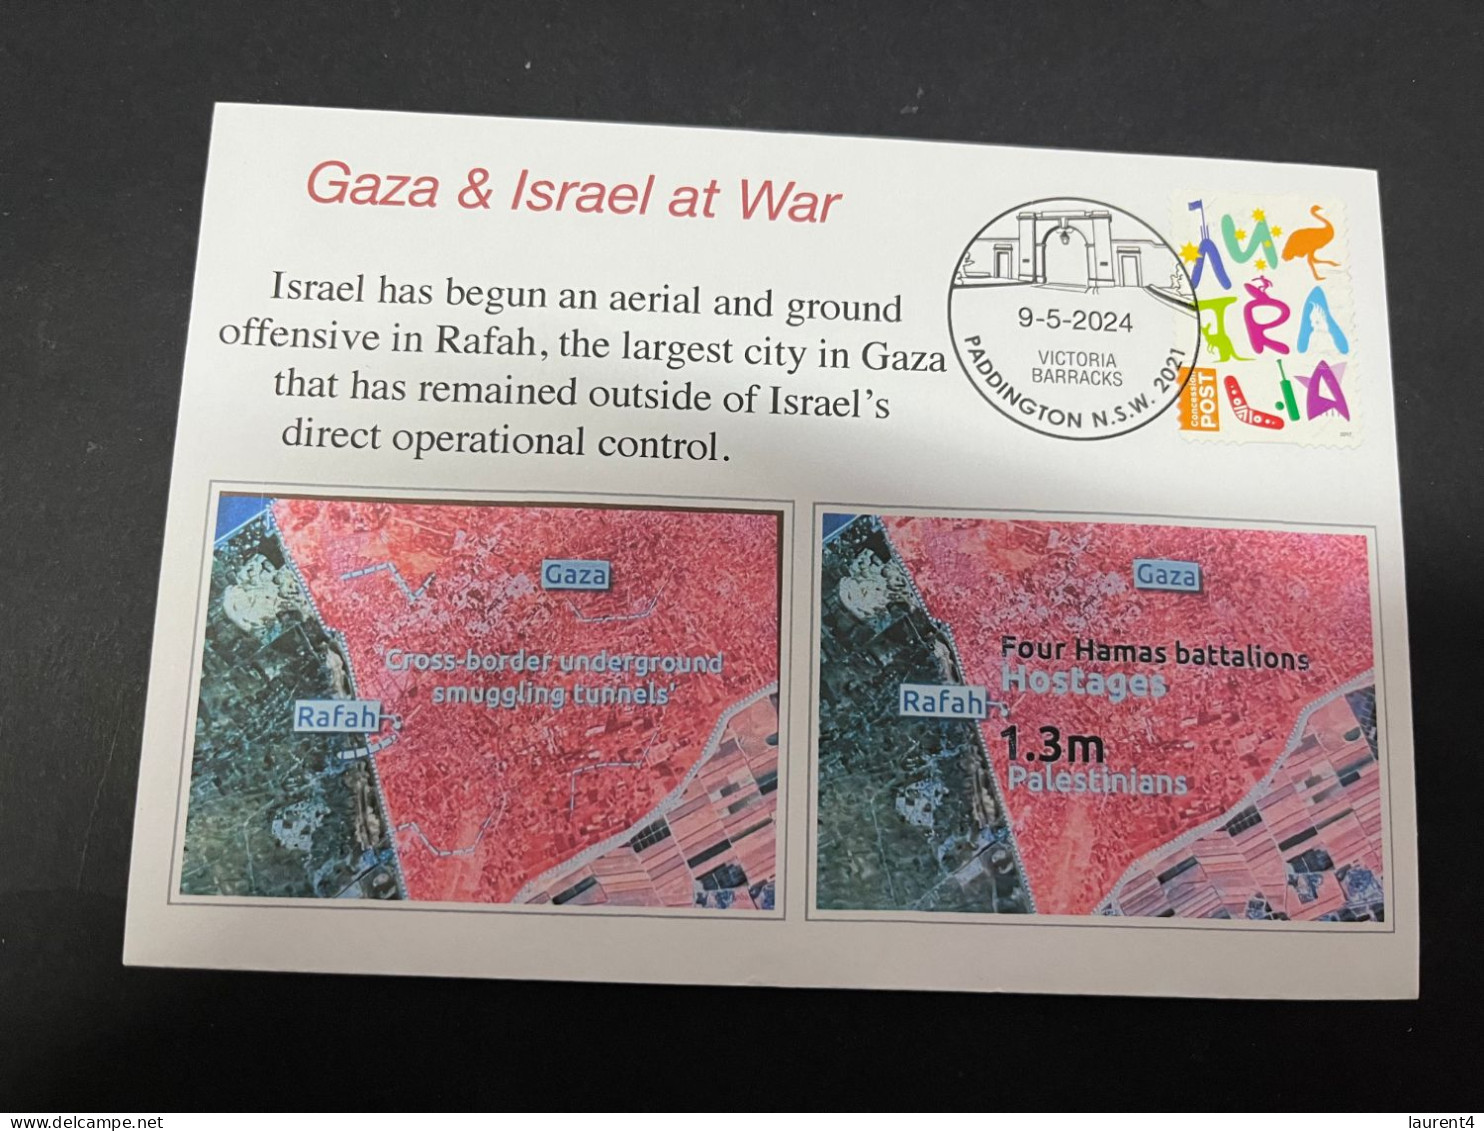 10-5-2024 (4 Z 37) GAZA War - Israel Begin Ground & Aerial Offensive In Rafah - Militares